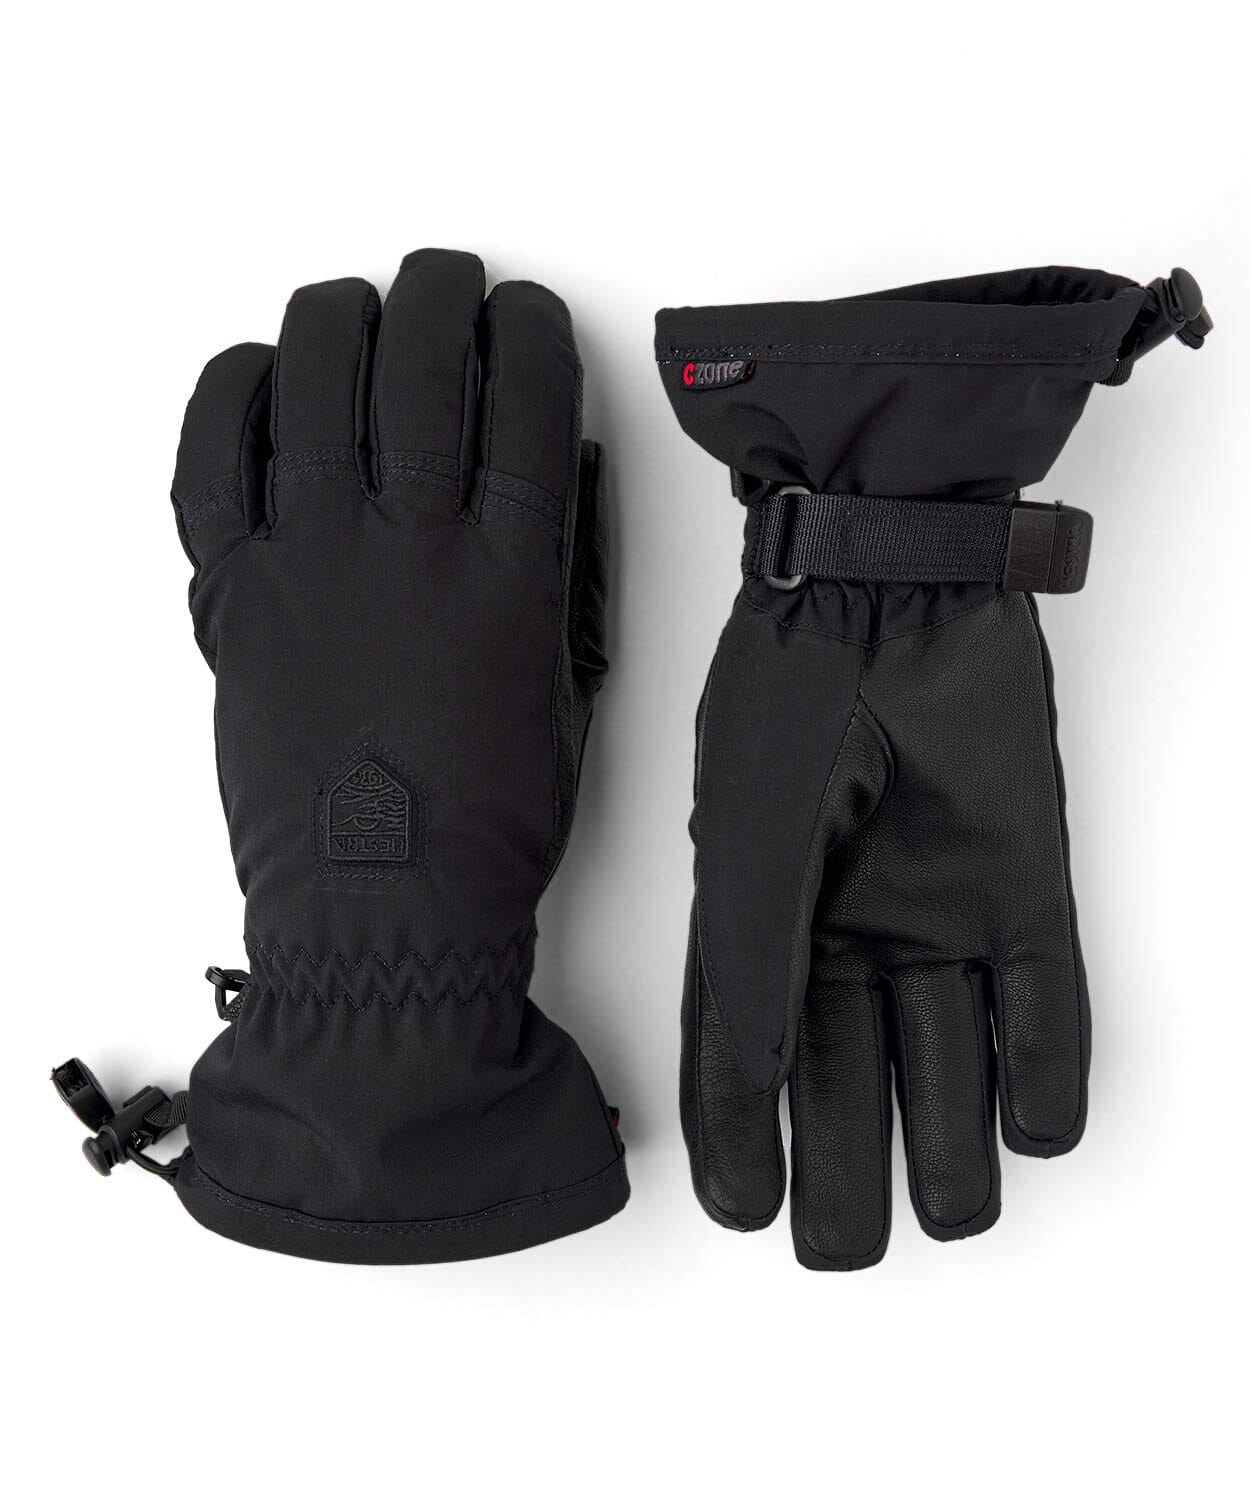 Women's Powder Czone Glove Gloves Hestra Black 5 